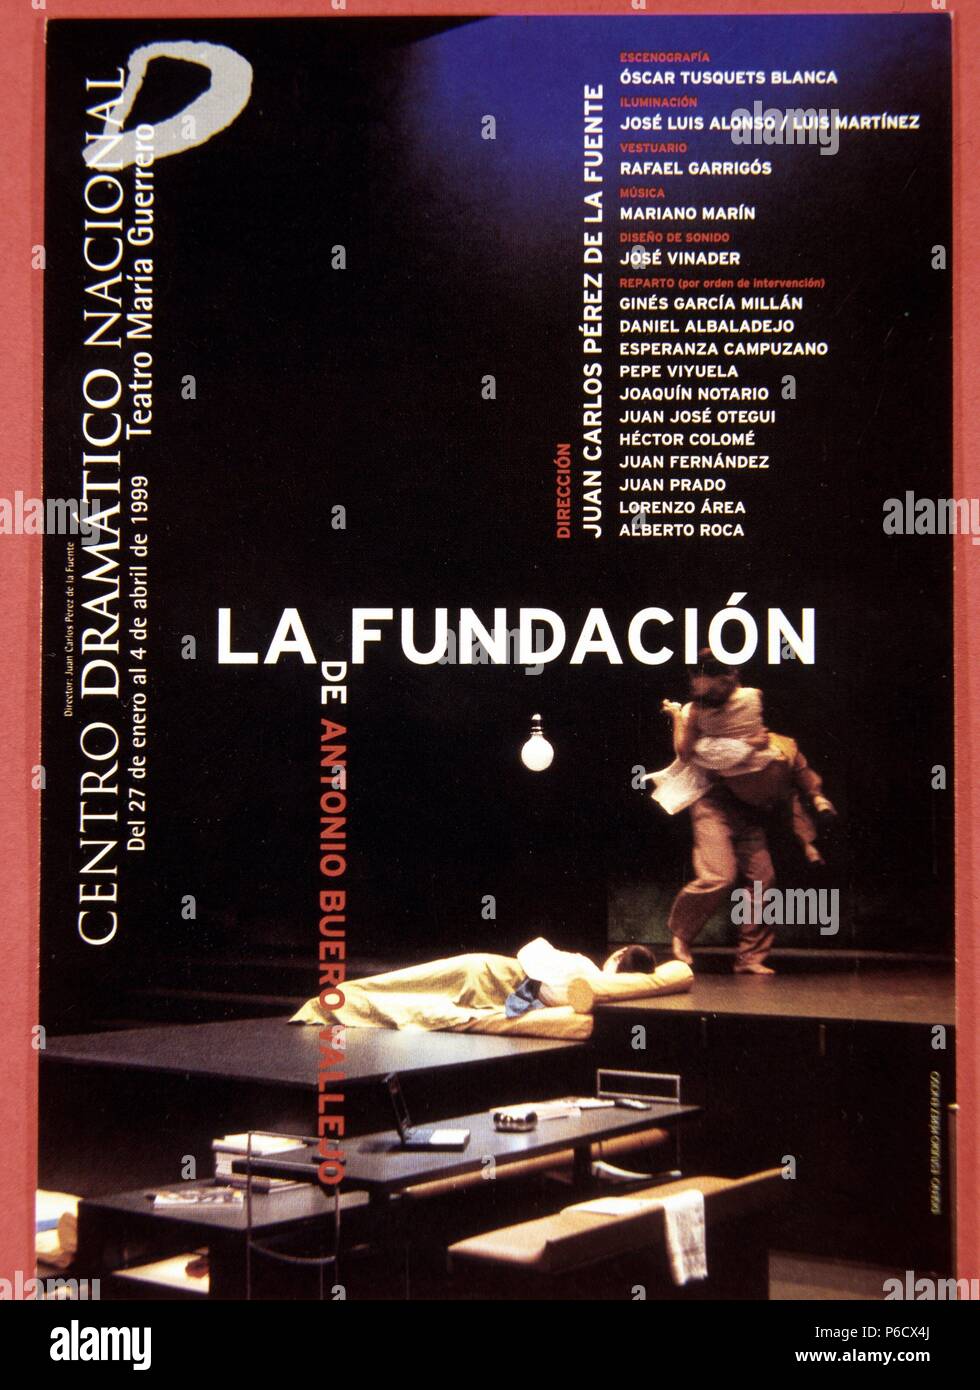 BUERO VALLEJO, ANTONIO. ESCRITOR ESPAÑOL. GUADALAJARA 1916-2000. CARTEL DE ' LA FUNDACION '. MADRID, 1999. Stock Photo